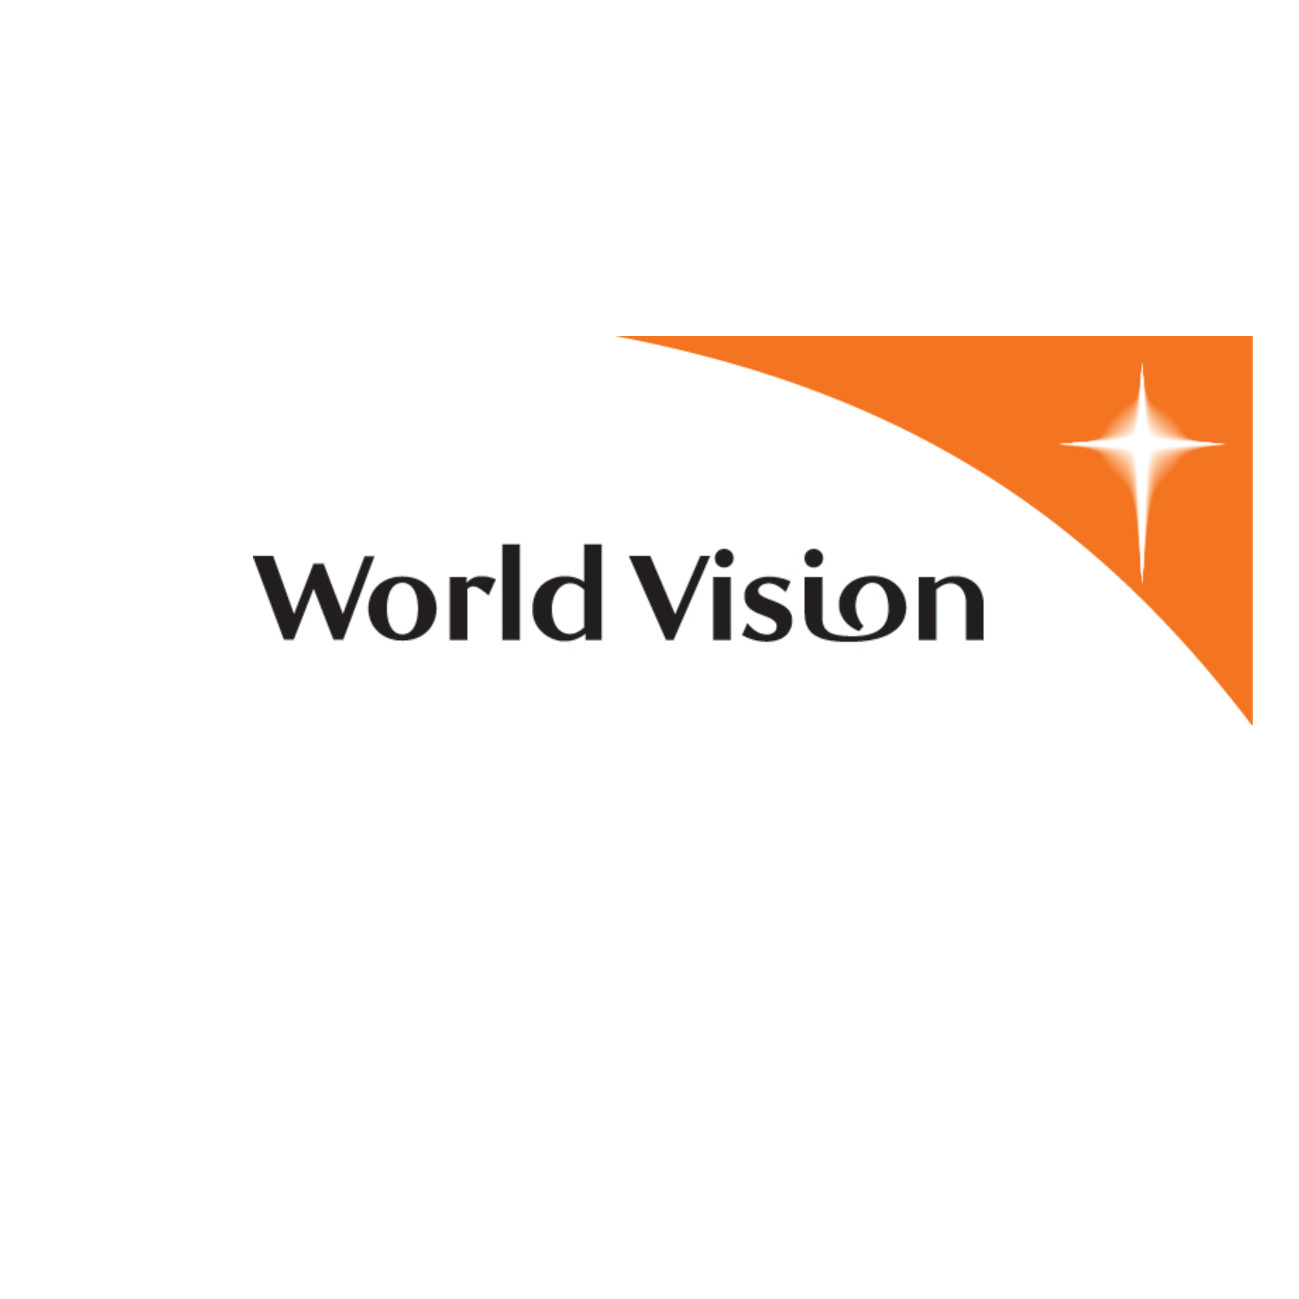 World Vision Australia